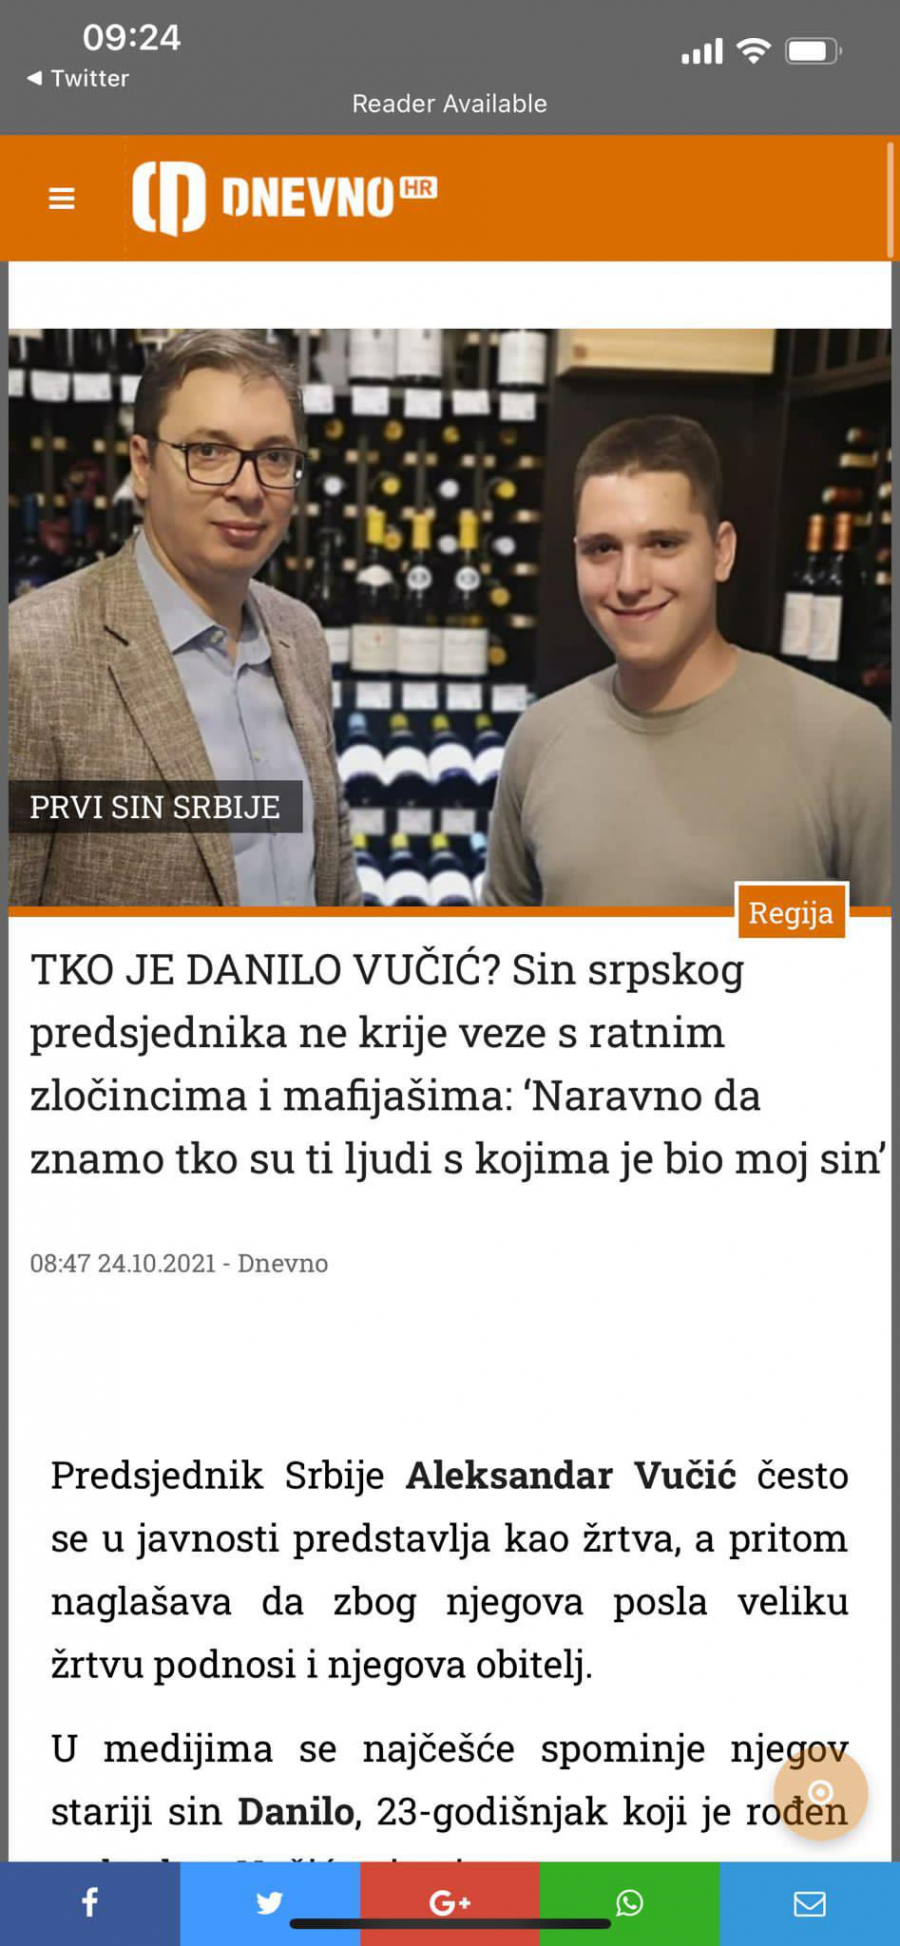 ĐILAS AKTIVIRAO USTAŠKE MEDIJE U REGIONU Uništite život Danilu Vučiću! (FOTO)